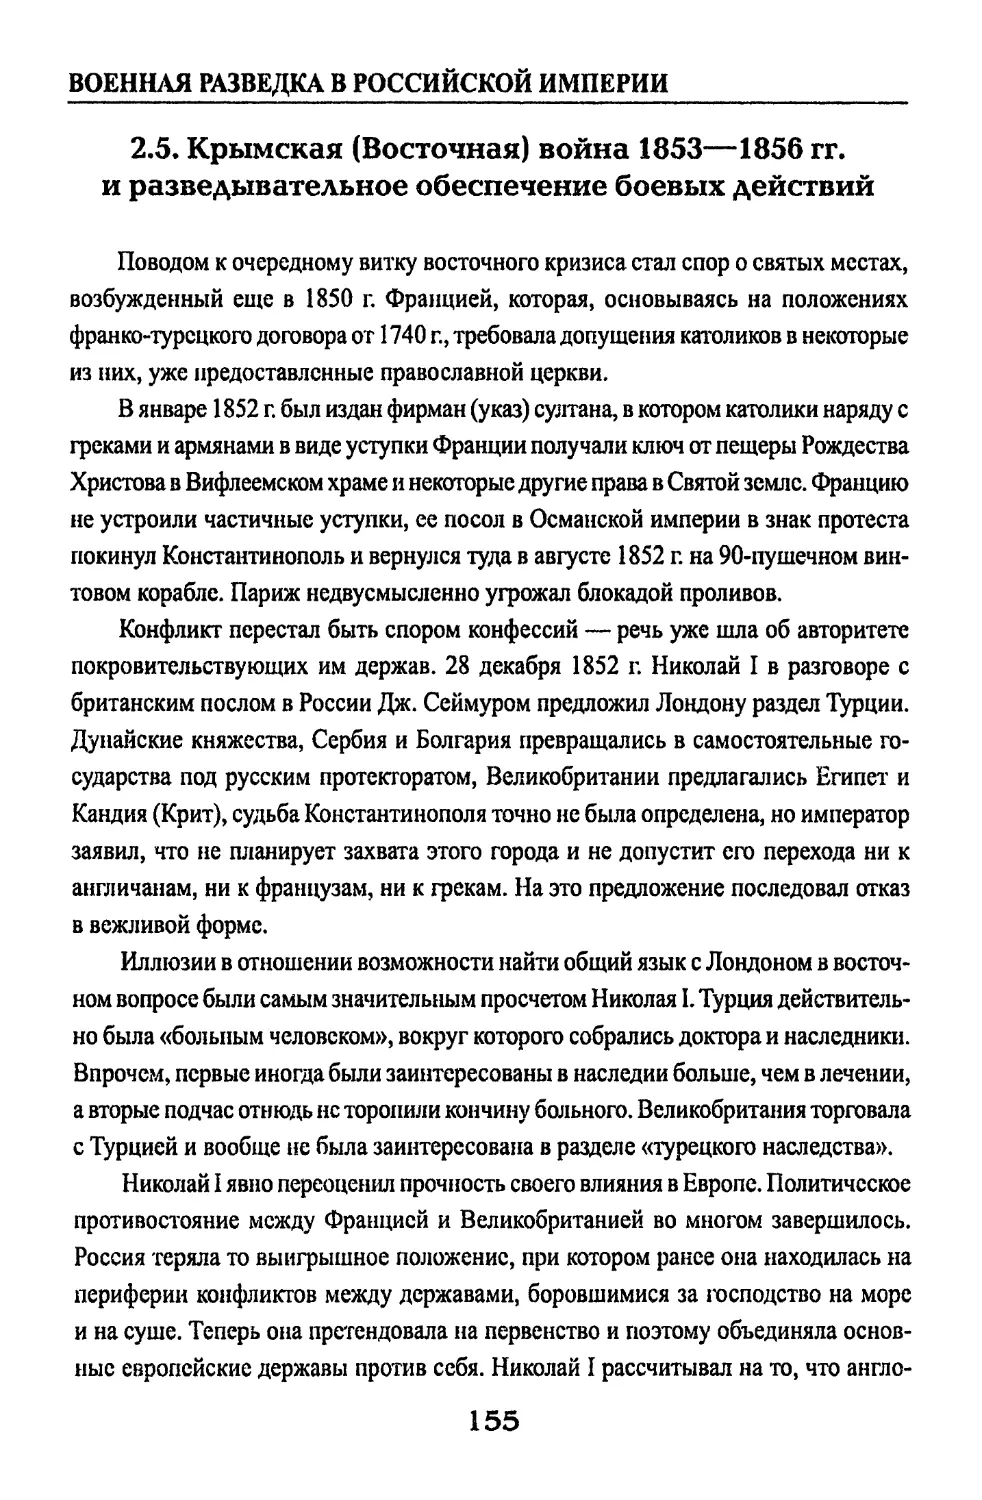 2.5. Крымская (Восточная) война 1853—1856 гг. и разведывательное обеспечение боевых действий